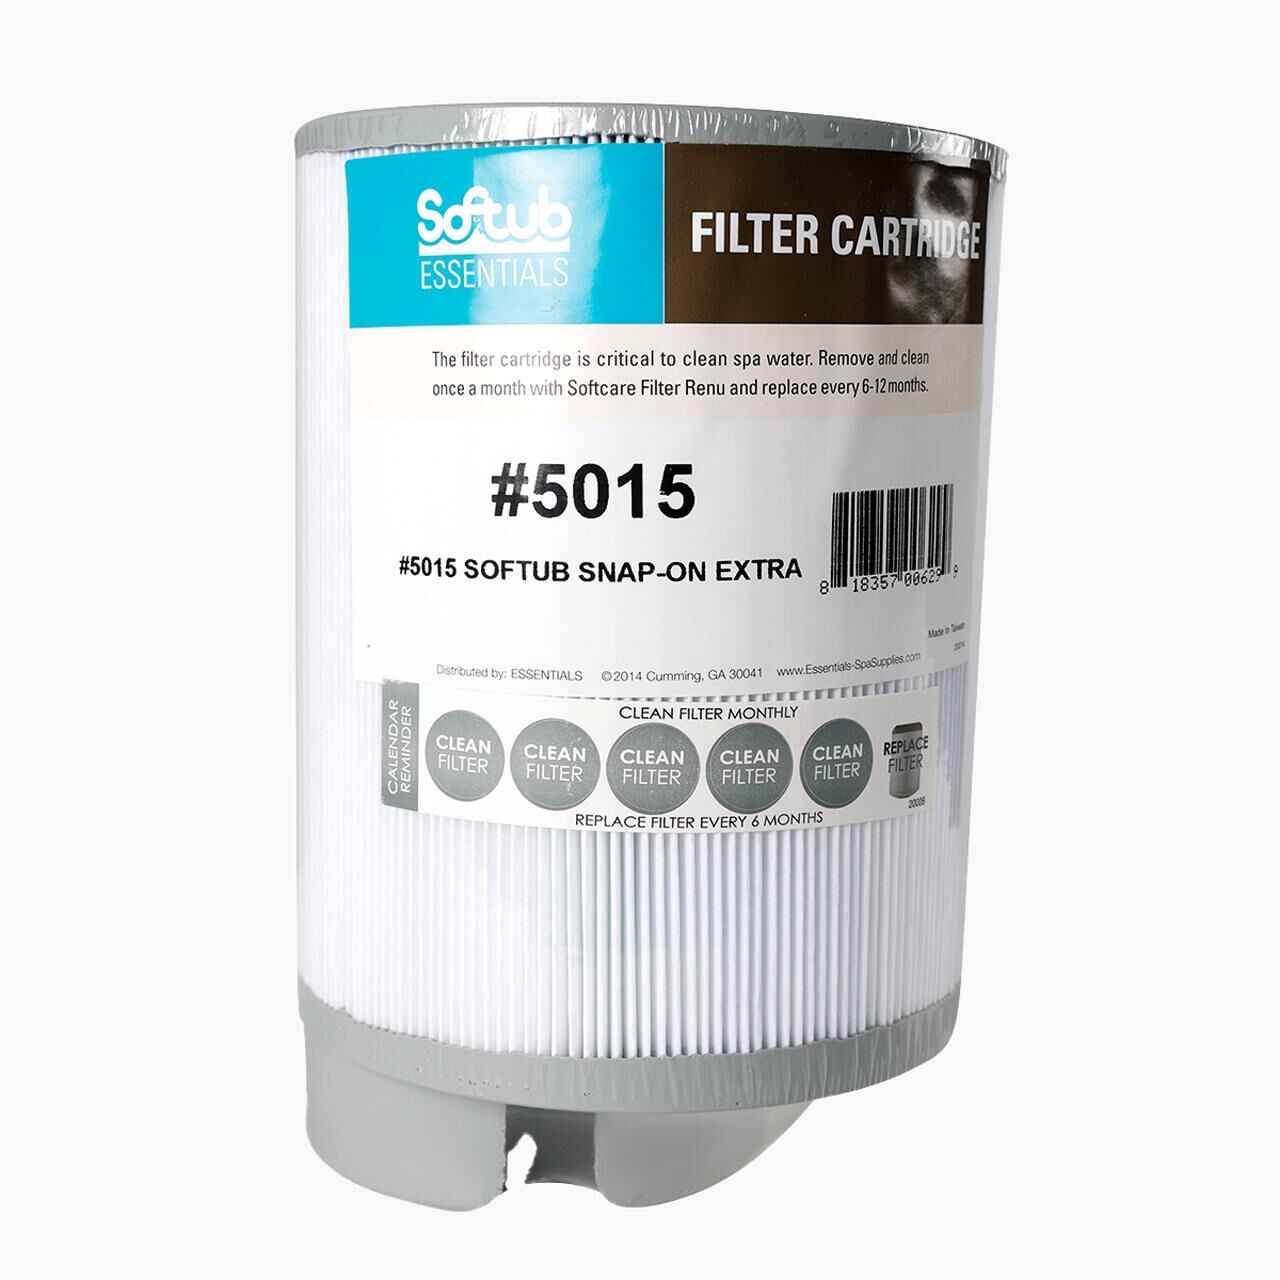 Filter SNAP ON für Softub Whirlpools BIS 2009 - Standard-Filter - 22 x 15 cm